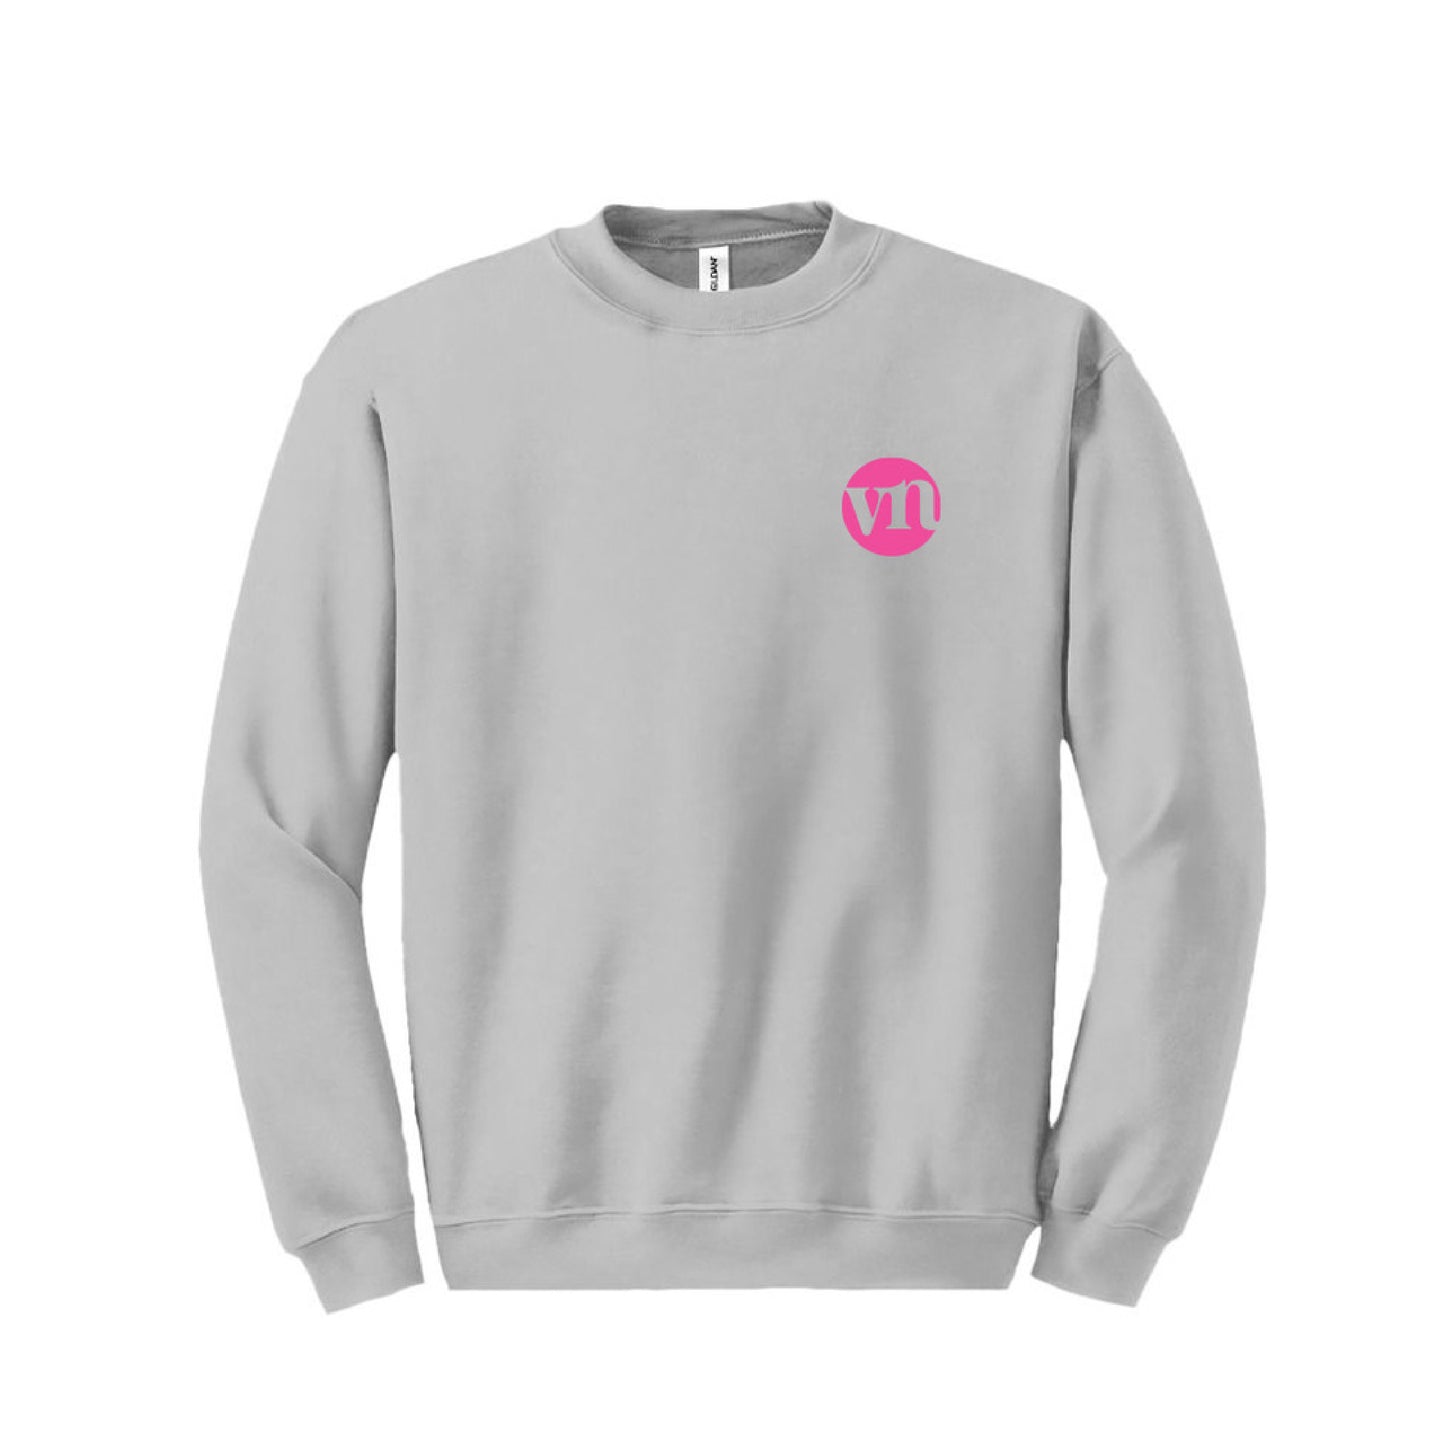 Grey Self Made Club Sweater